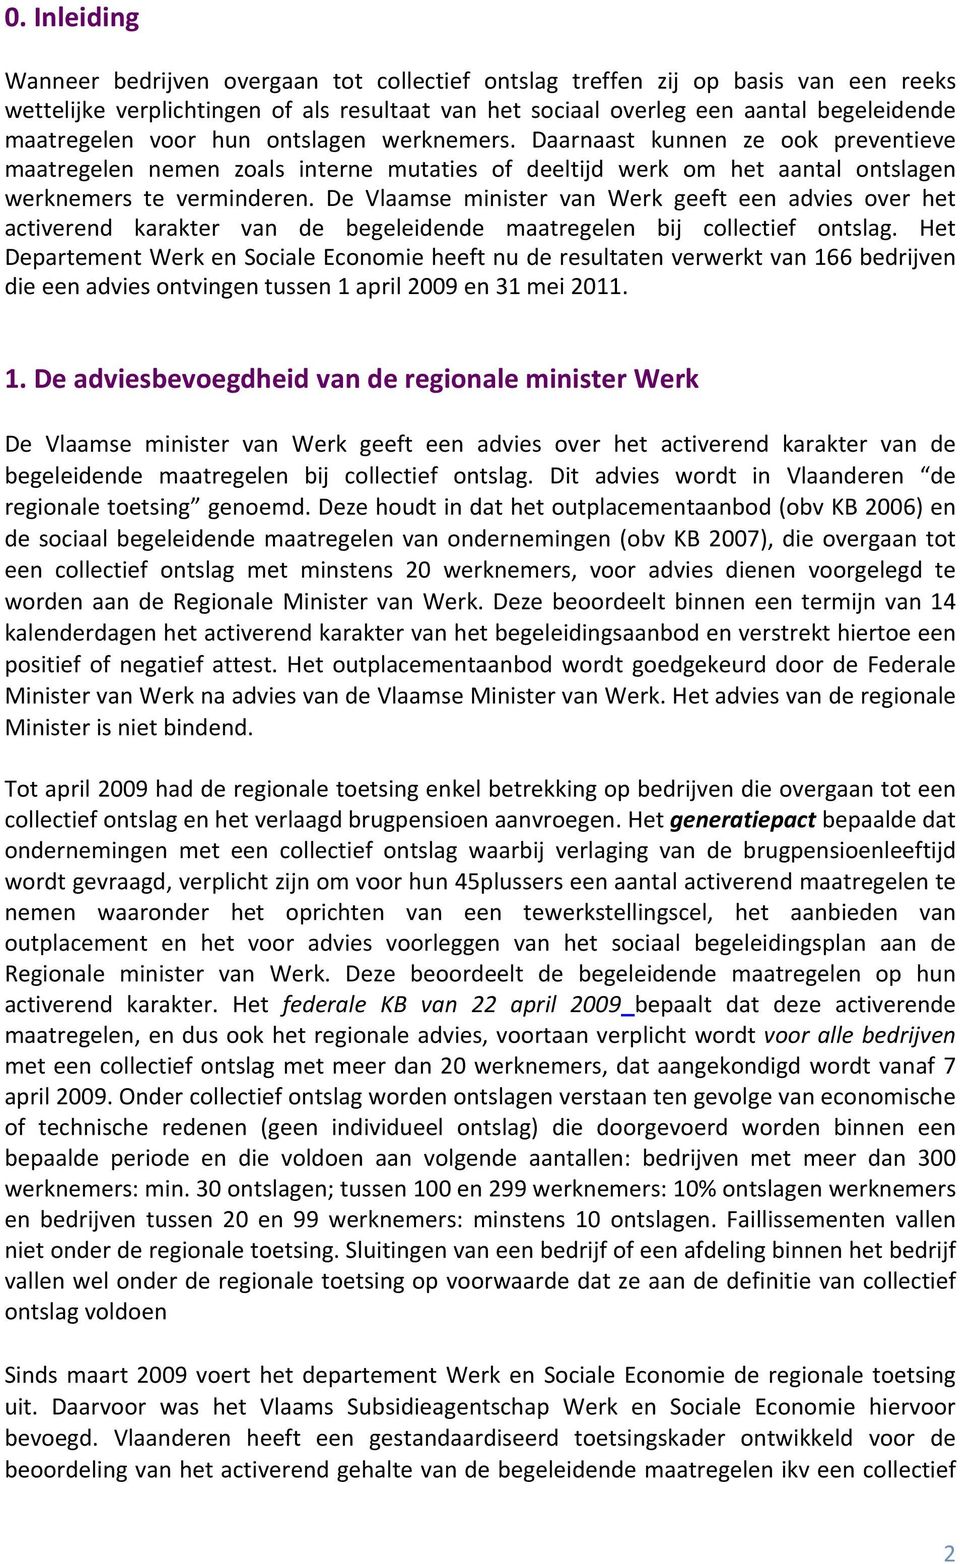 De Vlaamse minister van Werk geeft een advies over het activerend karakter van de begeleidende maatregelen bij collectief ontslag.